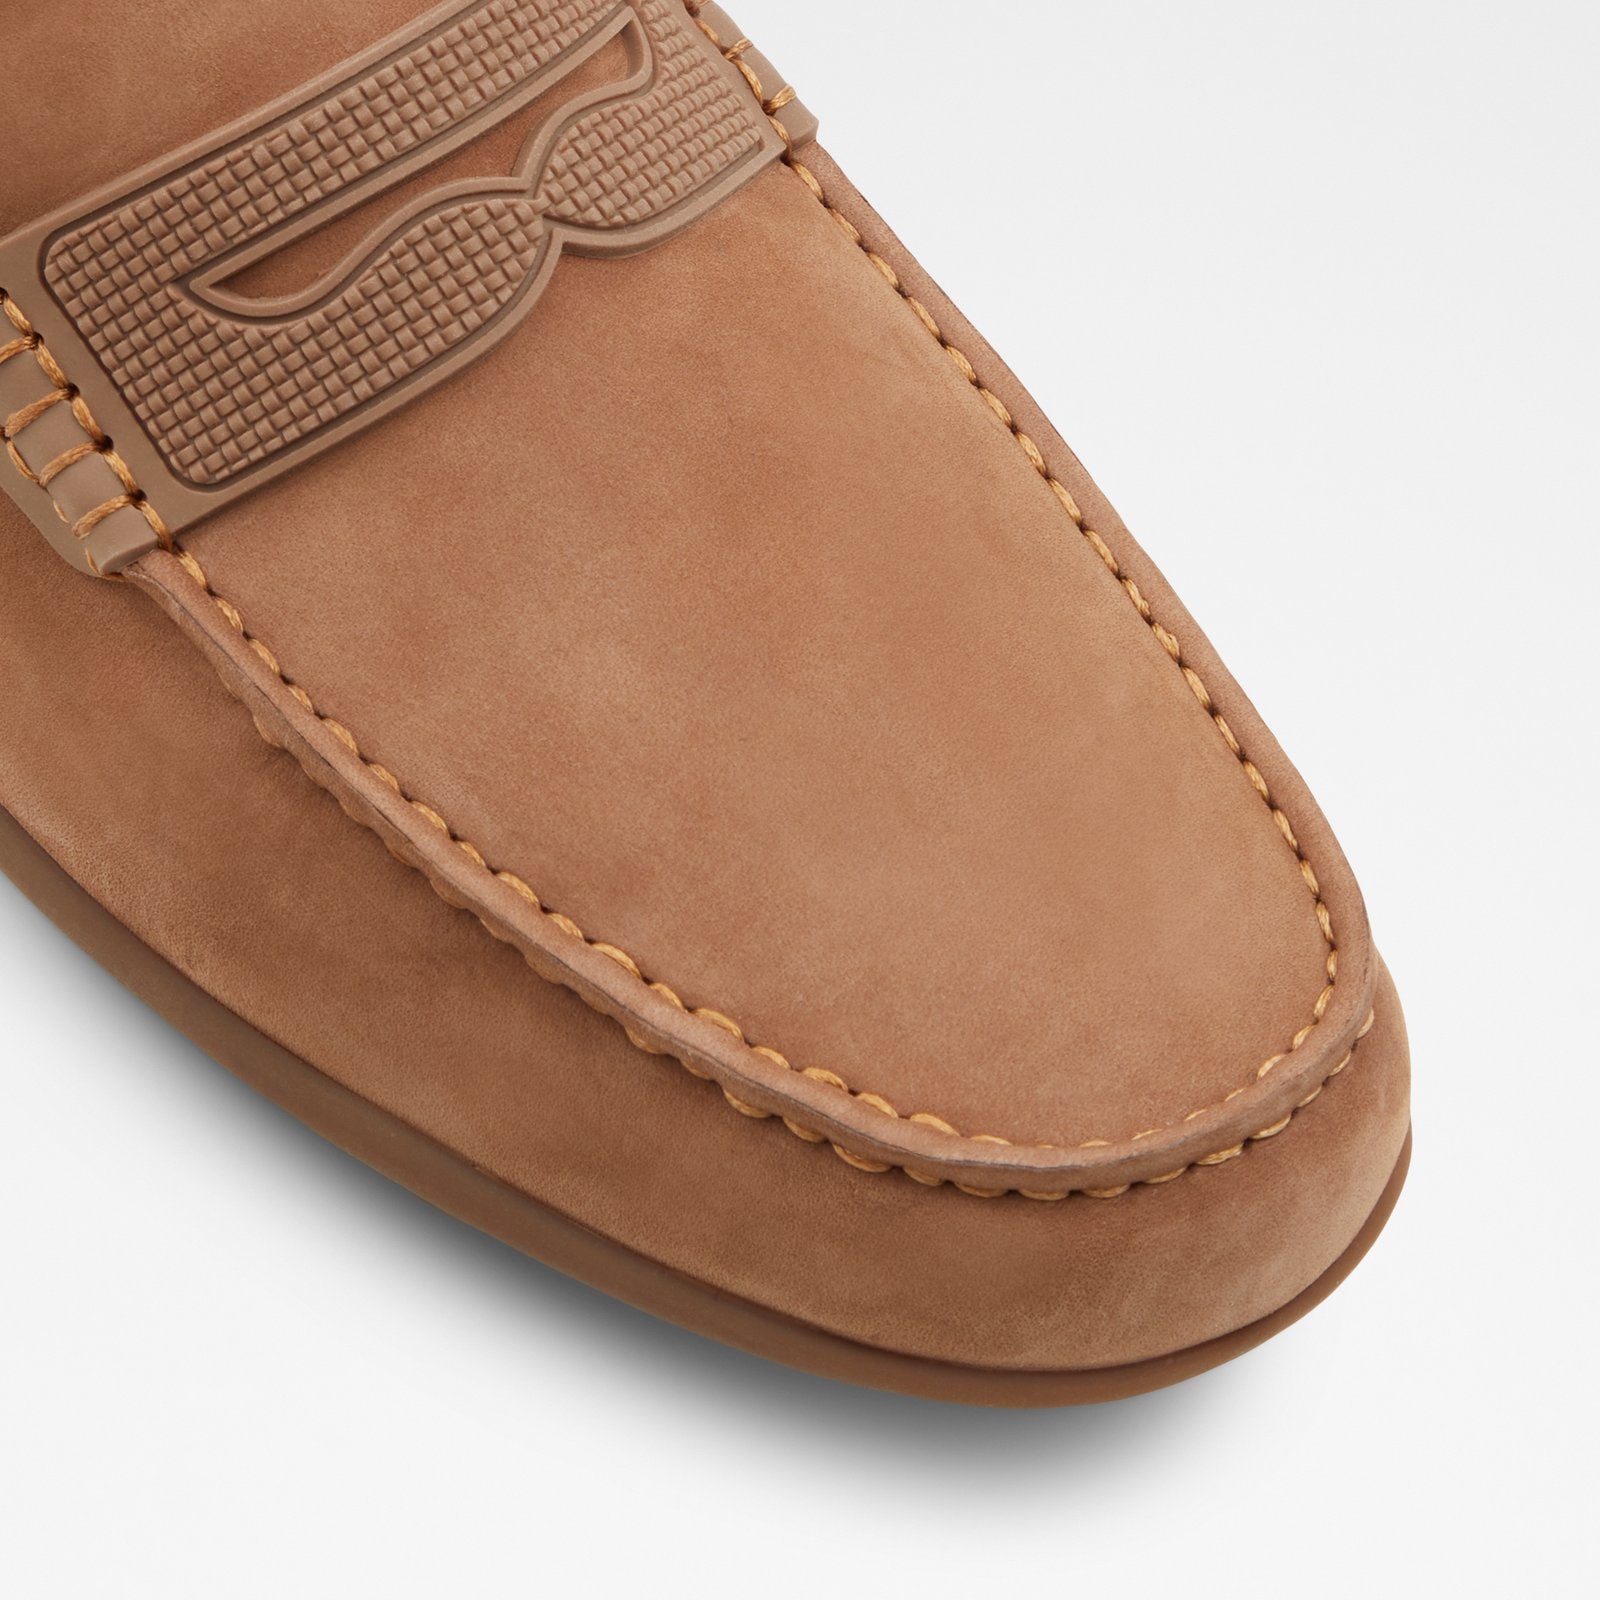 Kennigoflex Men Shoes - Brown - ALDO KSA